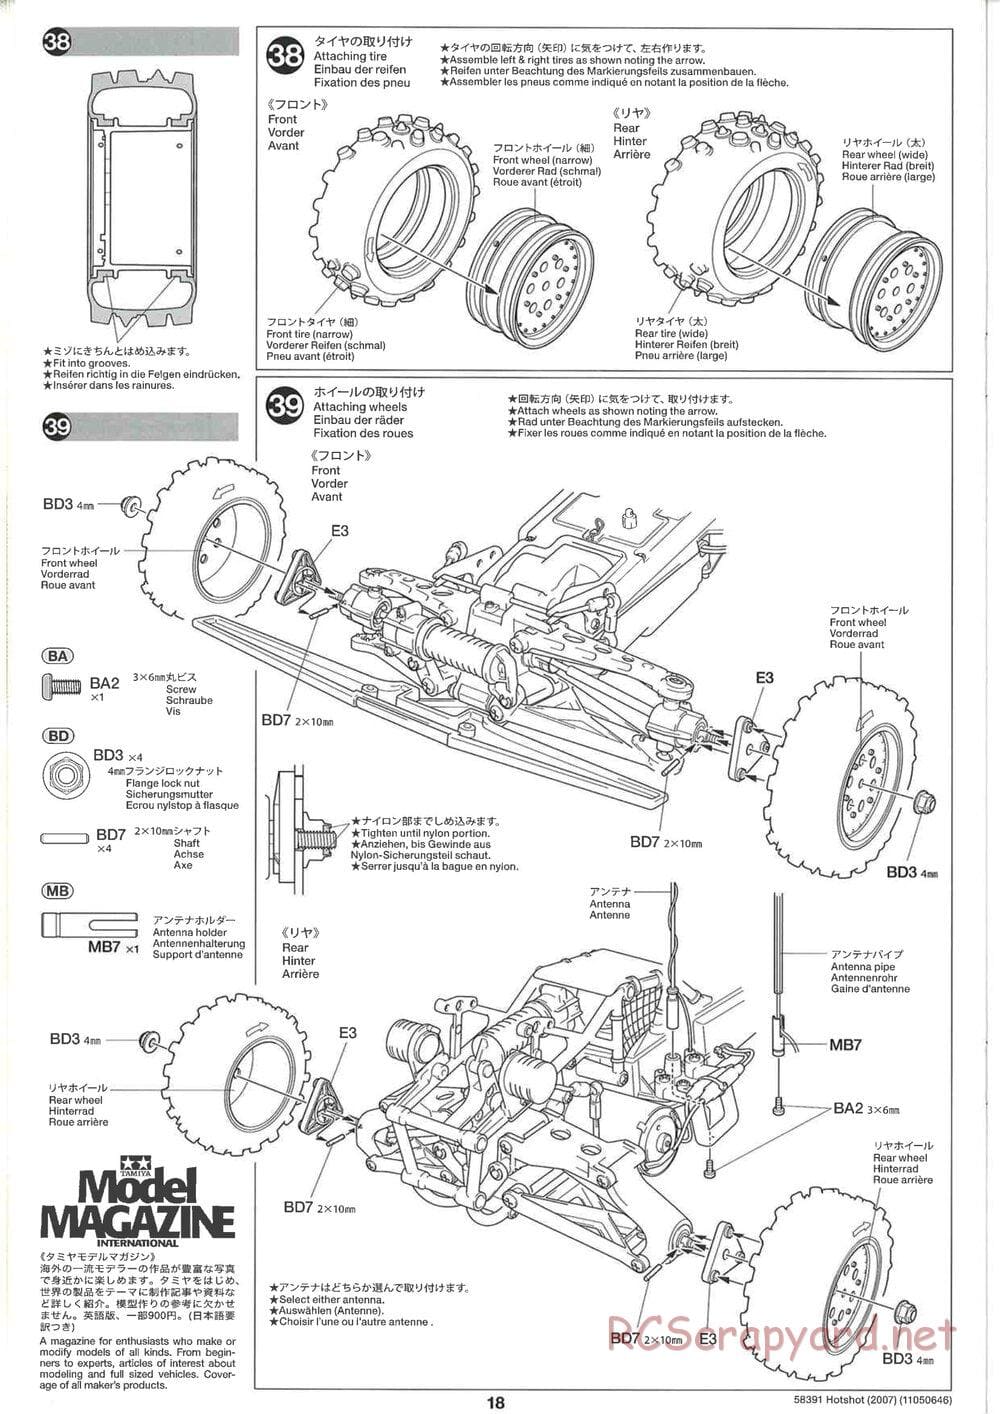 Tamiya - Hotshot - 2007 - HS Chassis - Manual - Page 18